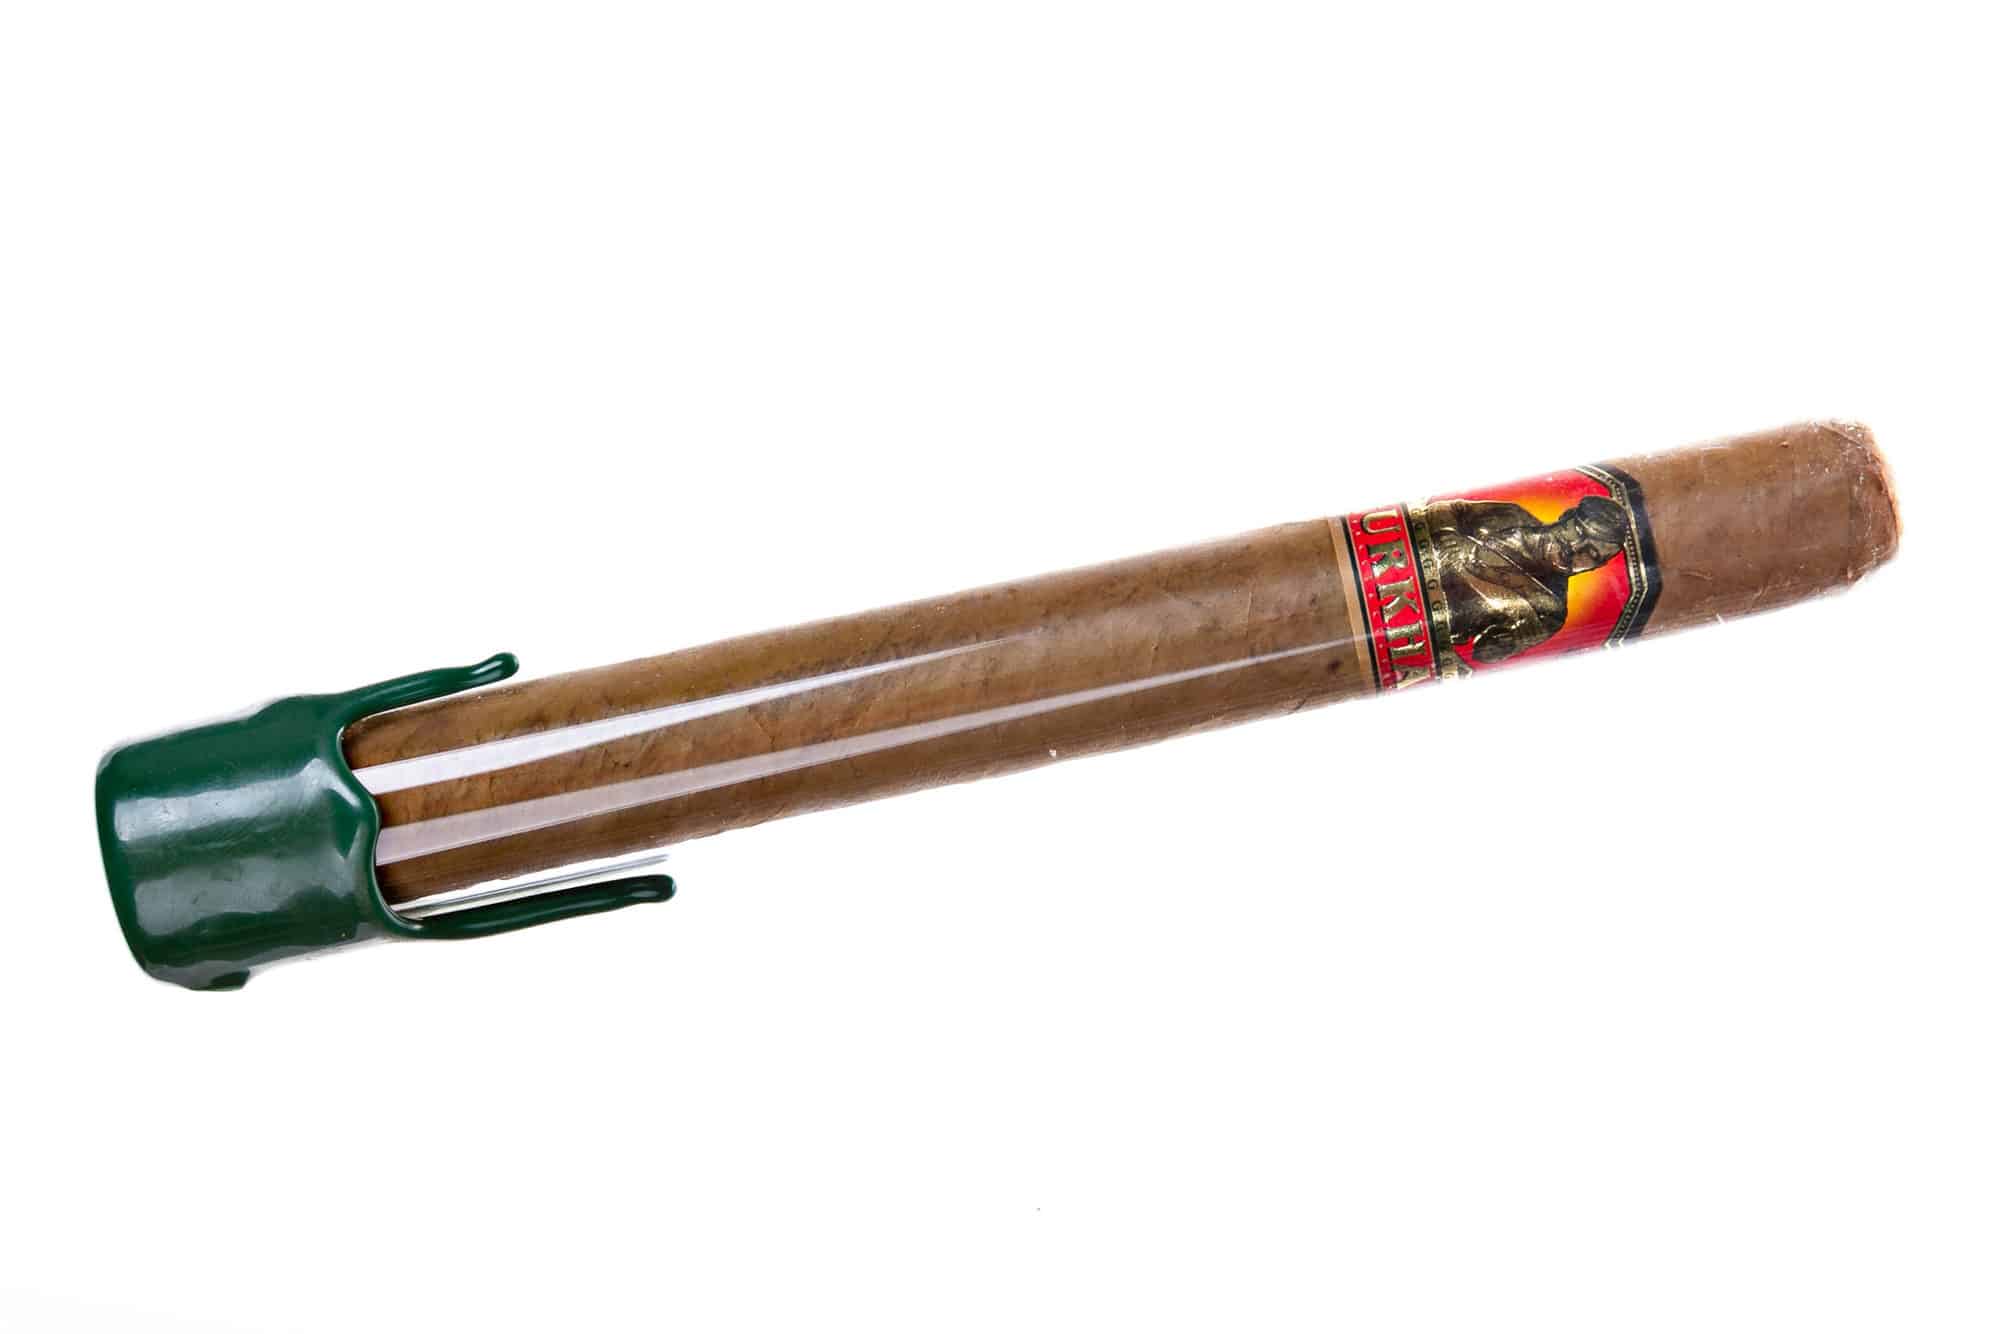 Xì gà đắt nhất - Khu bảo tồn của Bệ hạ Gurkha - $ 750: Xì gà